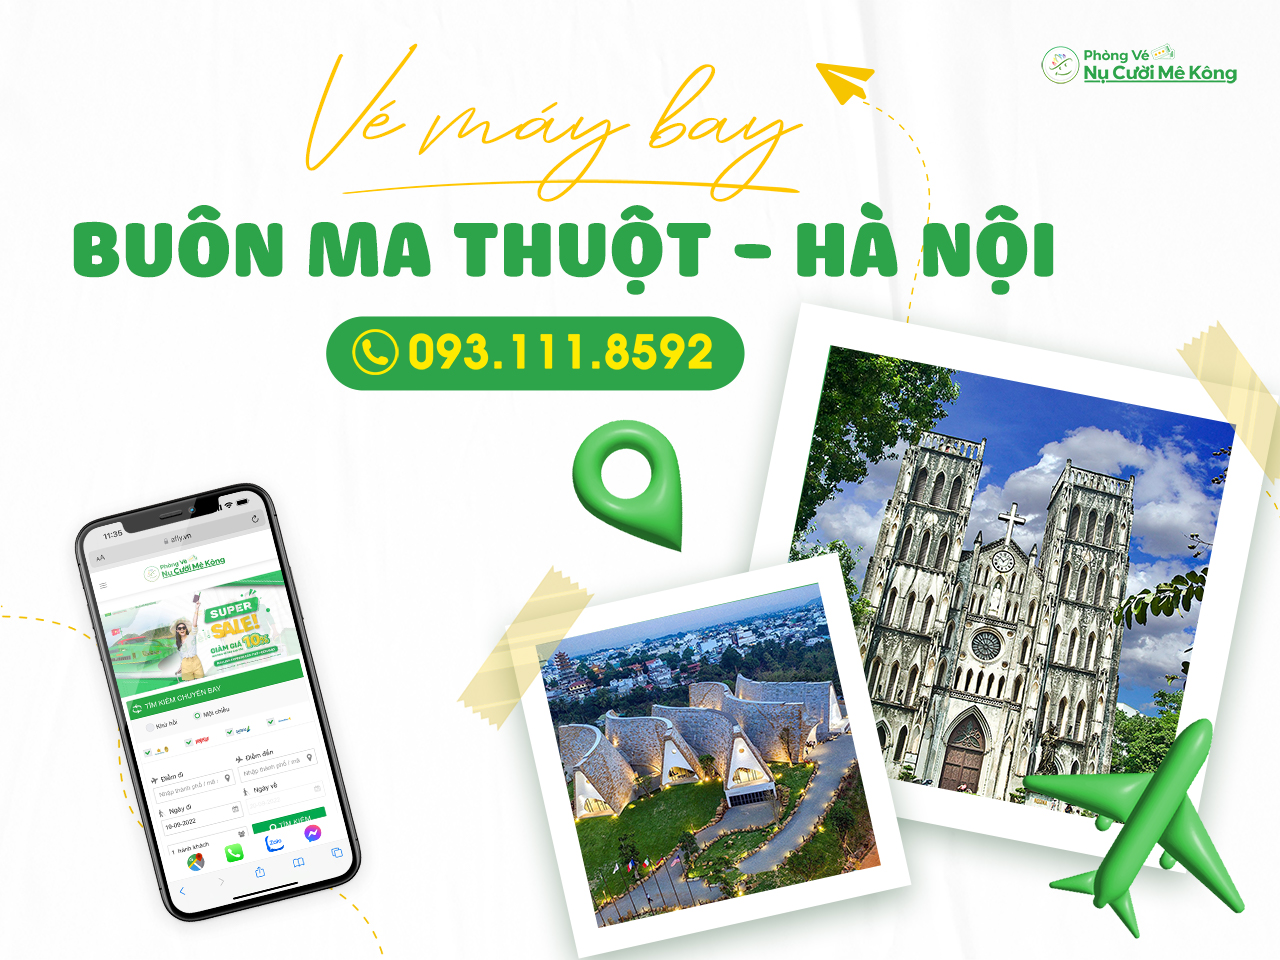 Vé Máy Bay Buôn Mê Thuột Hà Nội giá rẻ